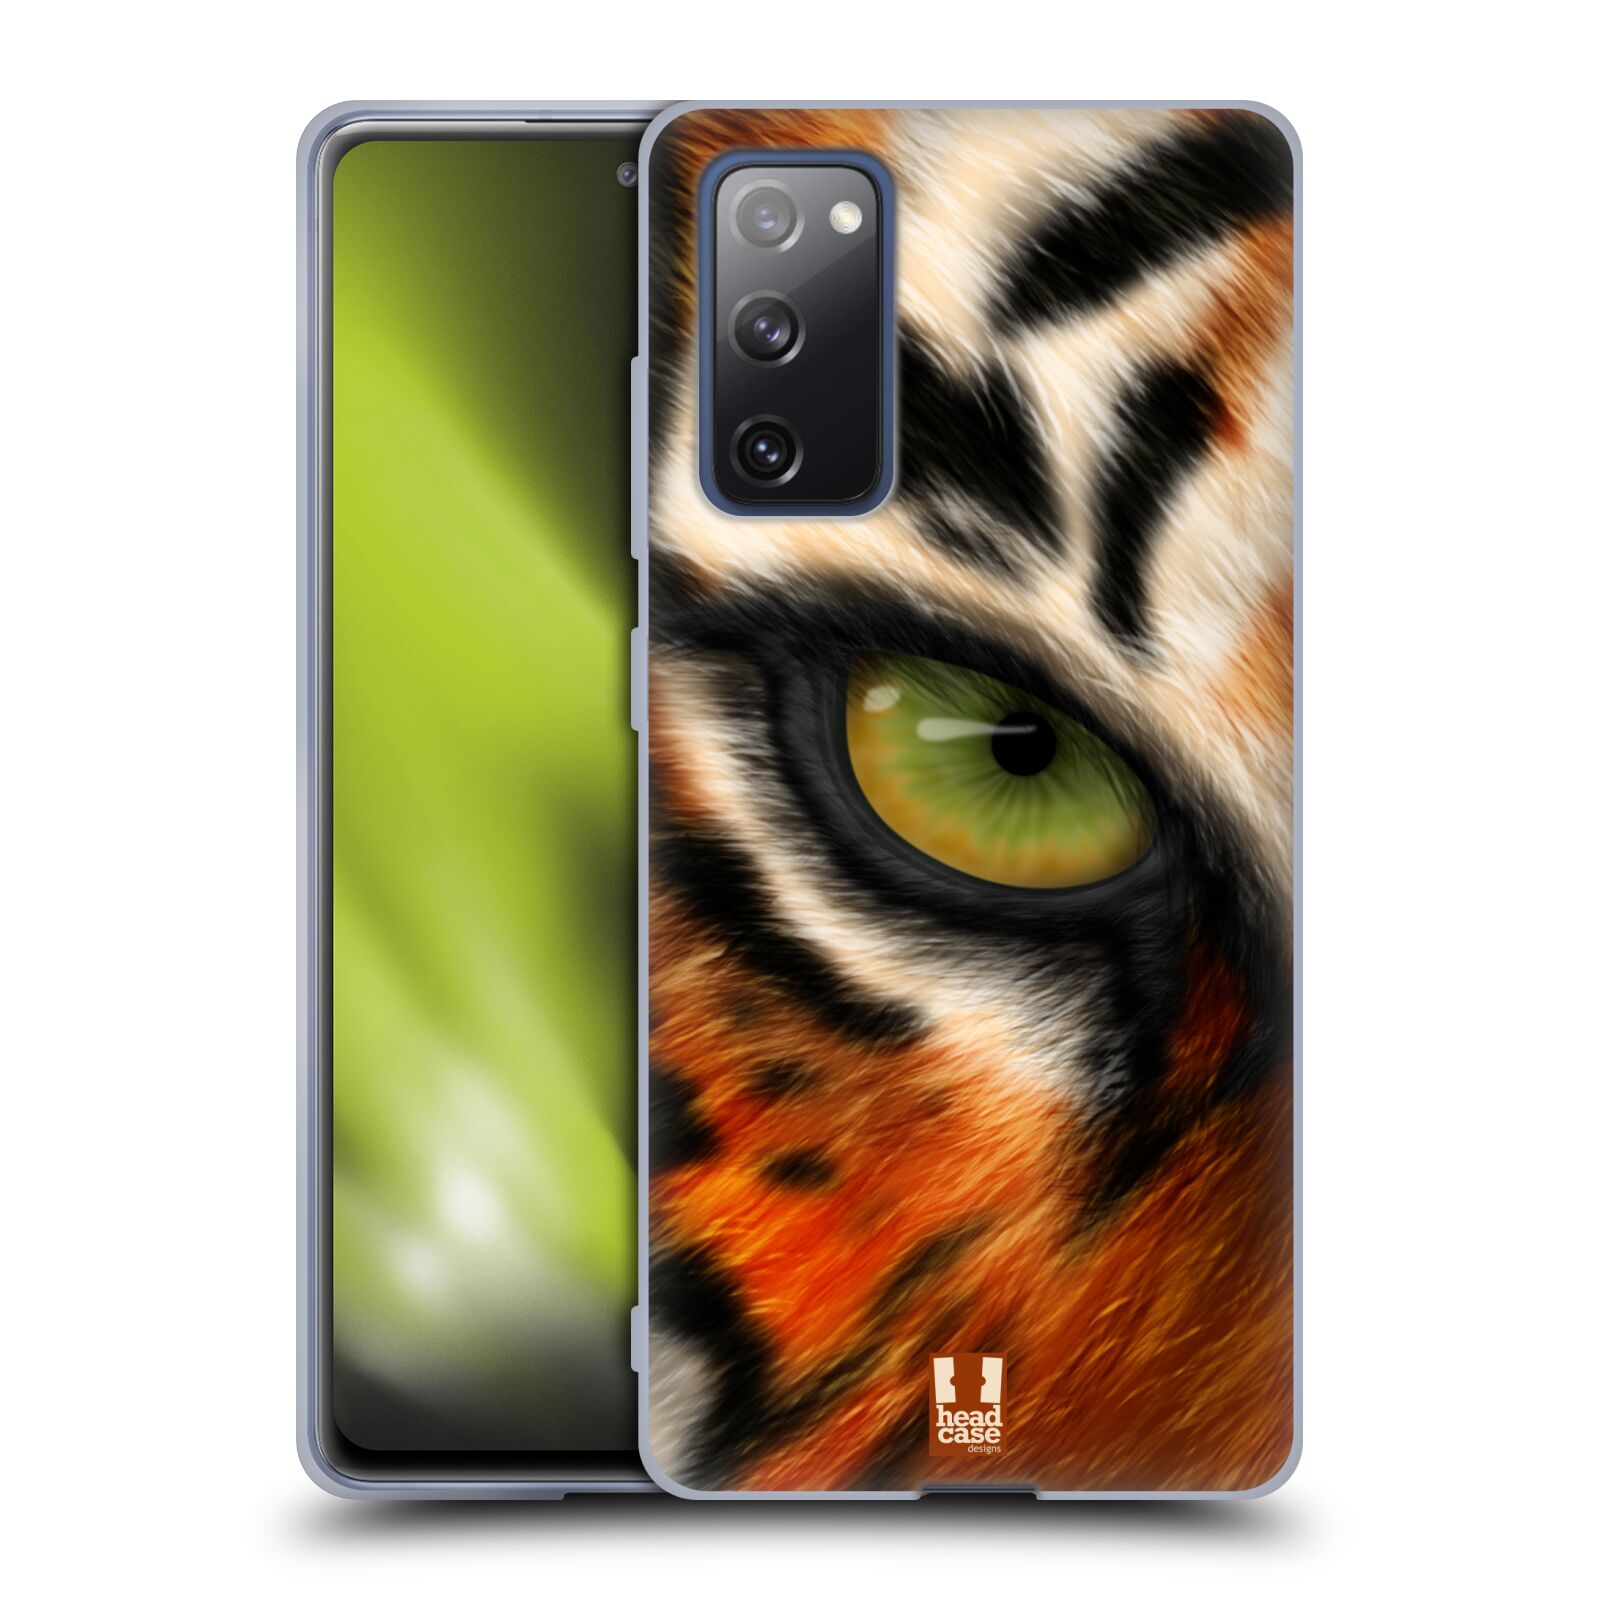 Plastový obal HEAD CASE na mobil Samsung Galaxy S20 FE / S20 FE 5G vzor pohled zvířete oko tygr